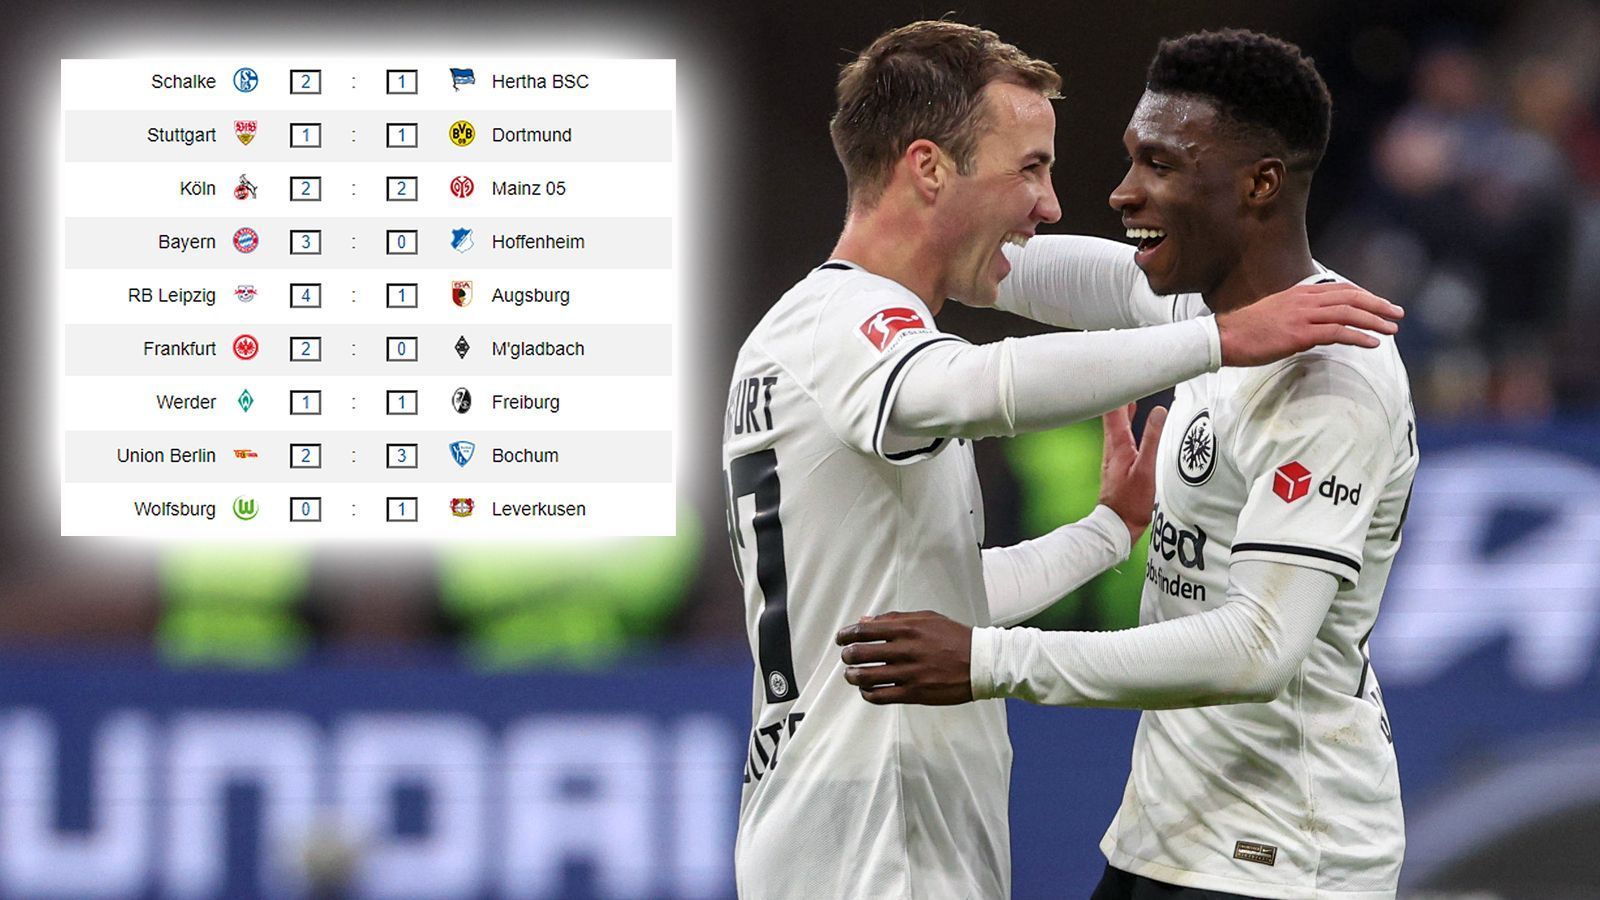 
                <strong>Ergebnisse 28. Spieltag</strong><br>
                Am 28. Spieltag sorgt Eintracht Frankfurt mit dem 2:0-Sieg über Gladbach dafür, dass die Europapokal-Hoffnungen neue Nahrung erhalten. Die Bayern lassen Hoffenheim hingegen keine Chance, während der BVB auch in Stuttgart wieder patzt.
              